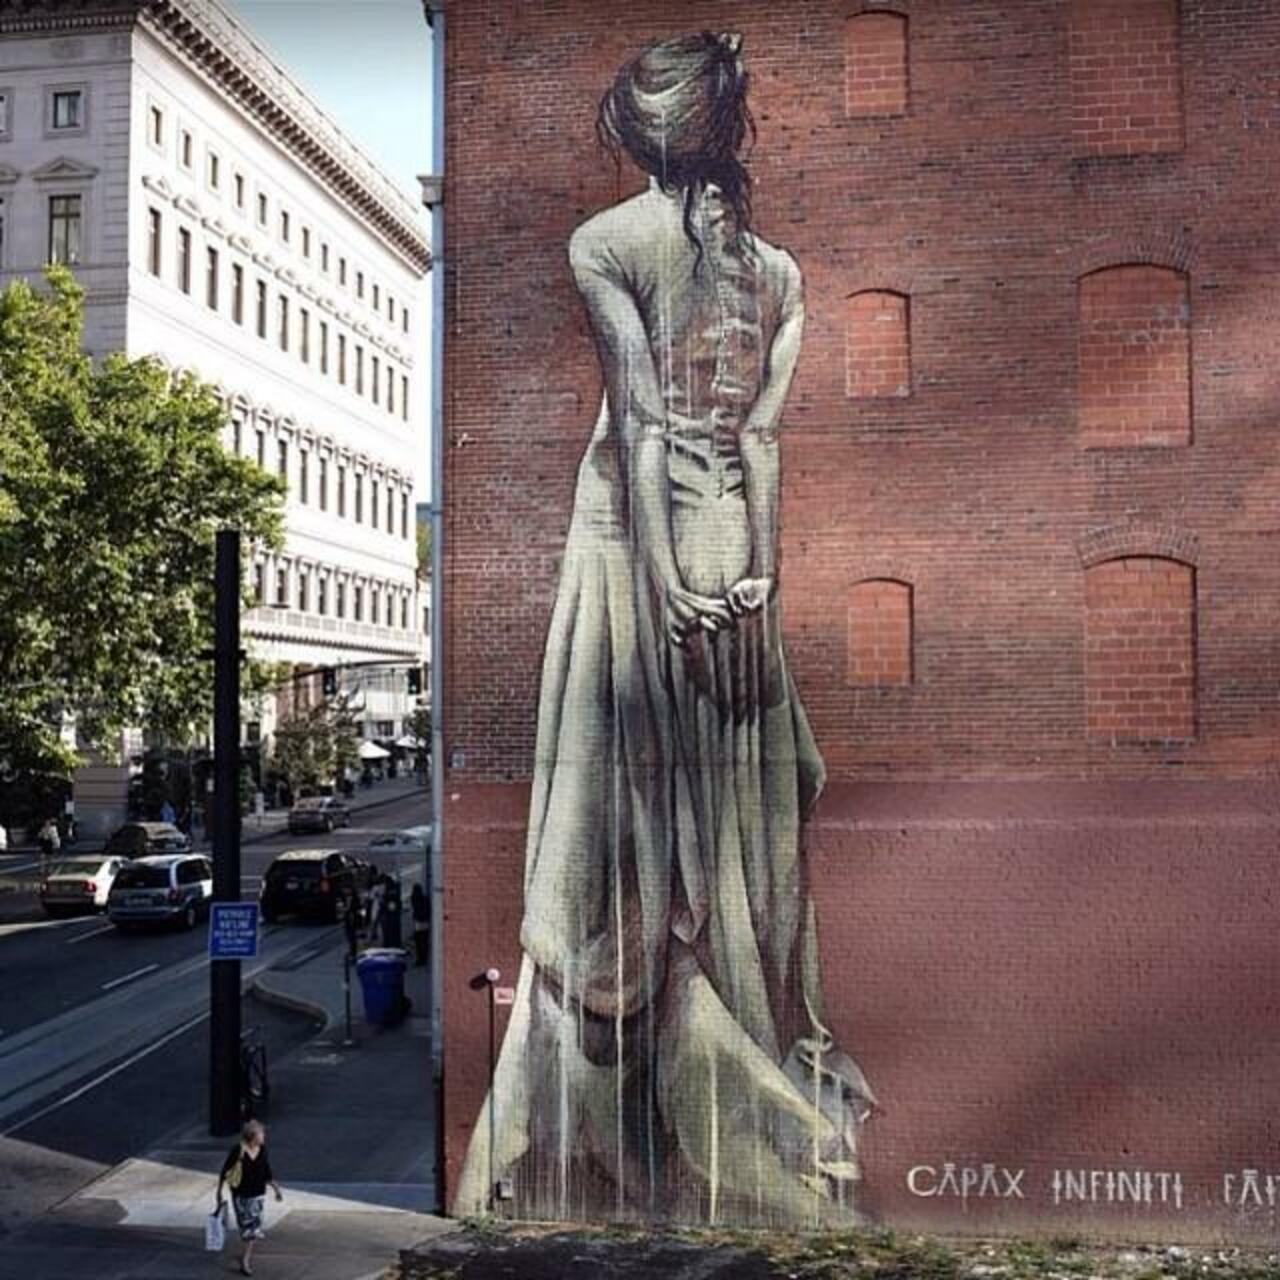 Artist @faithfourseven new huge Street Art mural 'Capax Infiniti' in Portland #art #mural #graffiti #streetart http://t.co/9aEGFXkjaV